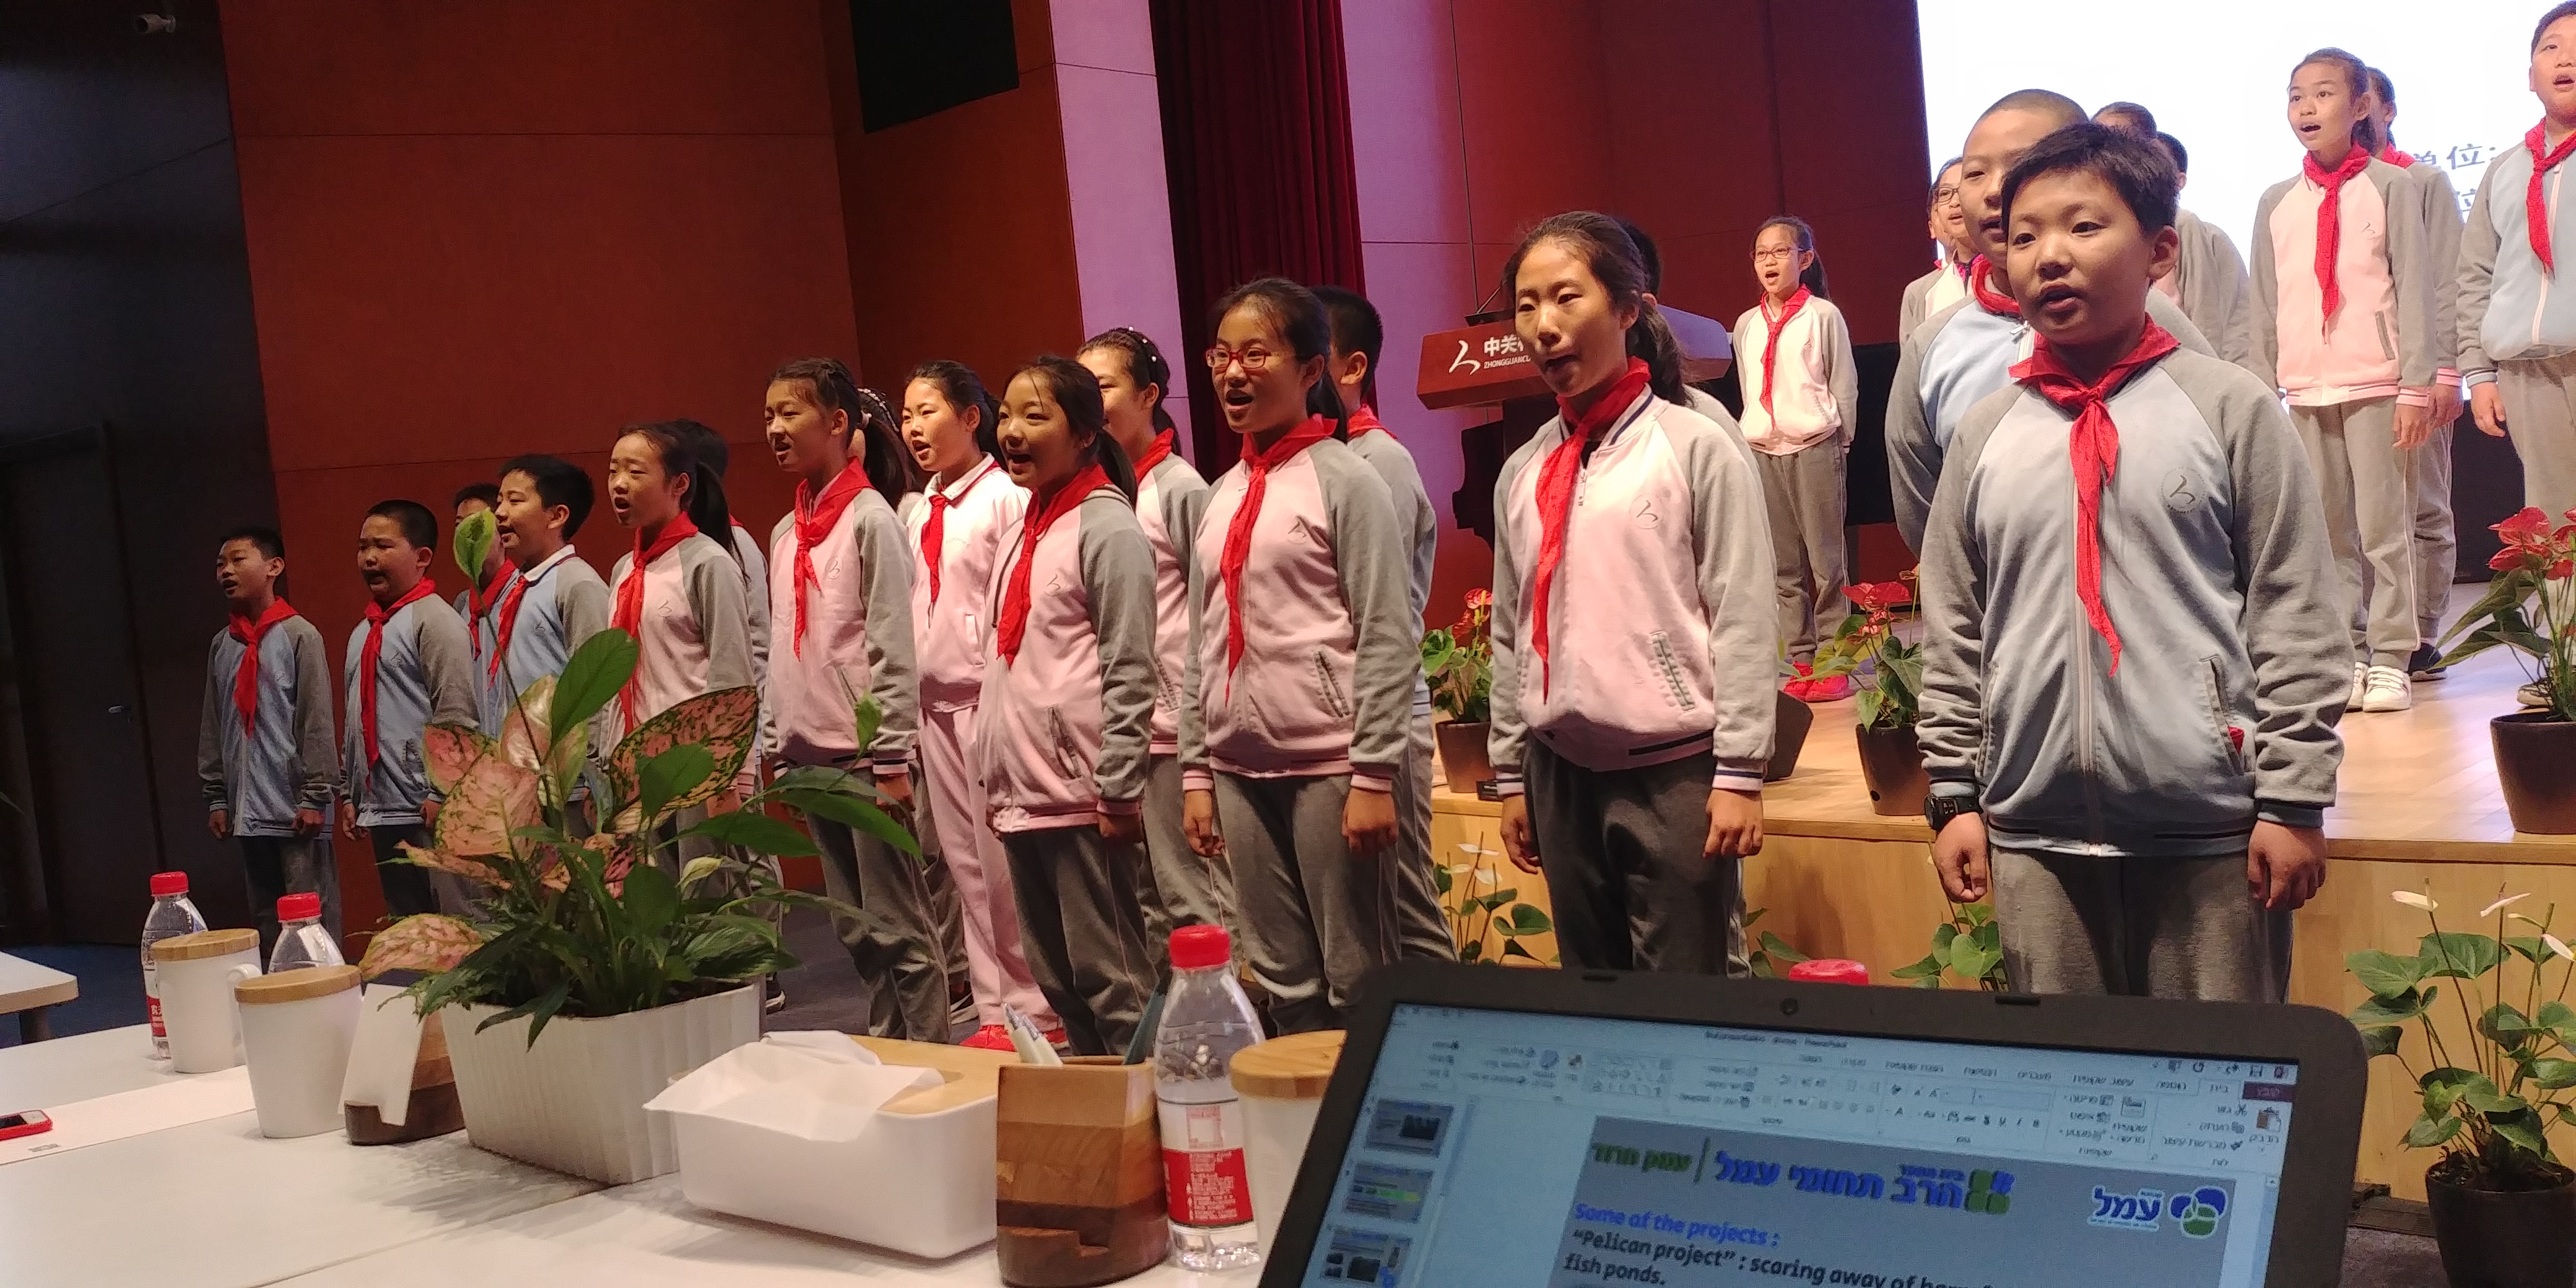 רשמים מביקור מורי עמל בכנס חינוך בינלאומי בסין